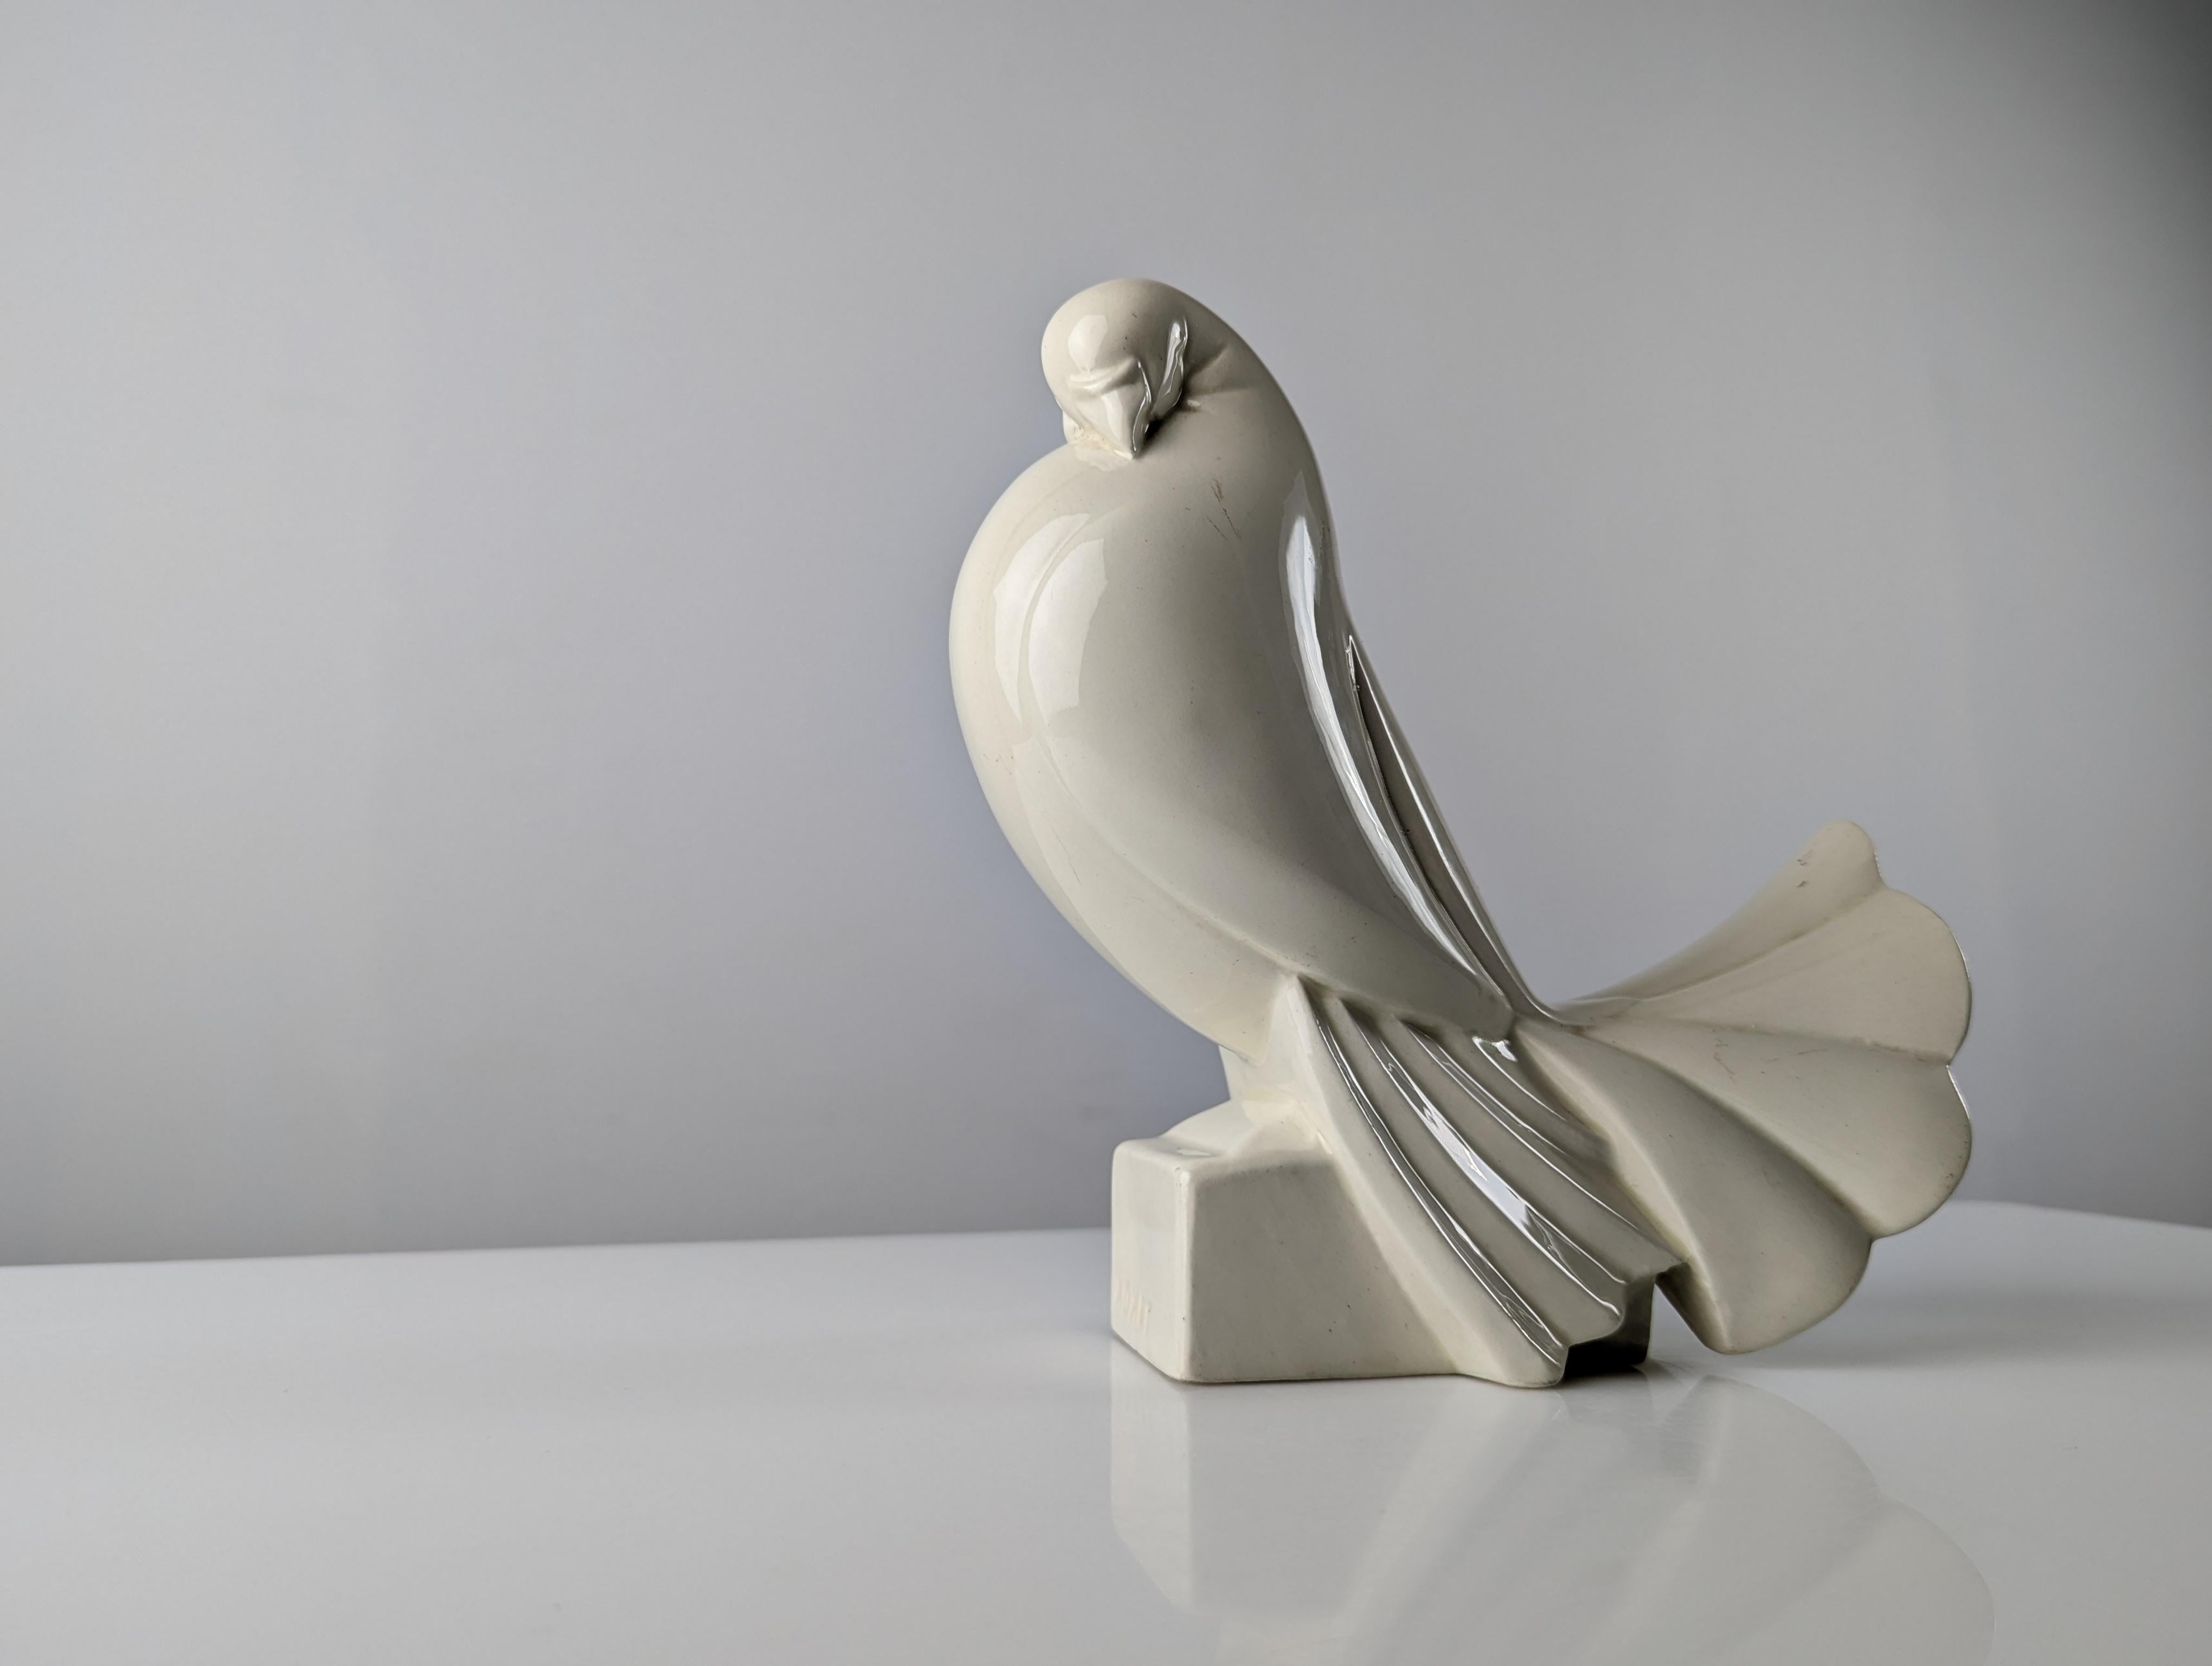 Außergewöhnliche Keramiktaube des bekannten französischen Künstlers und Designers Jacques Adnet, die erstmals 1925 auf der Internationalen Ausstellung für dekorative Künste und moderne Industrien in Paris ausgestellt wurde, und zwar in der